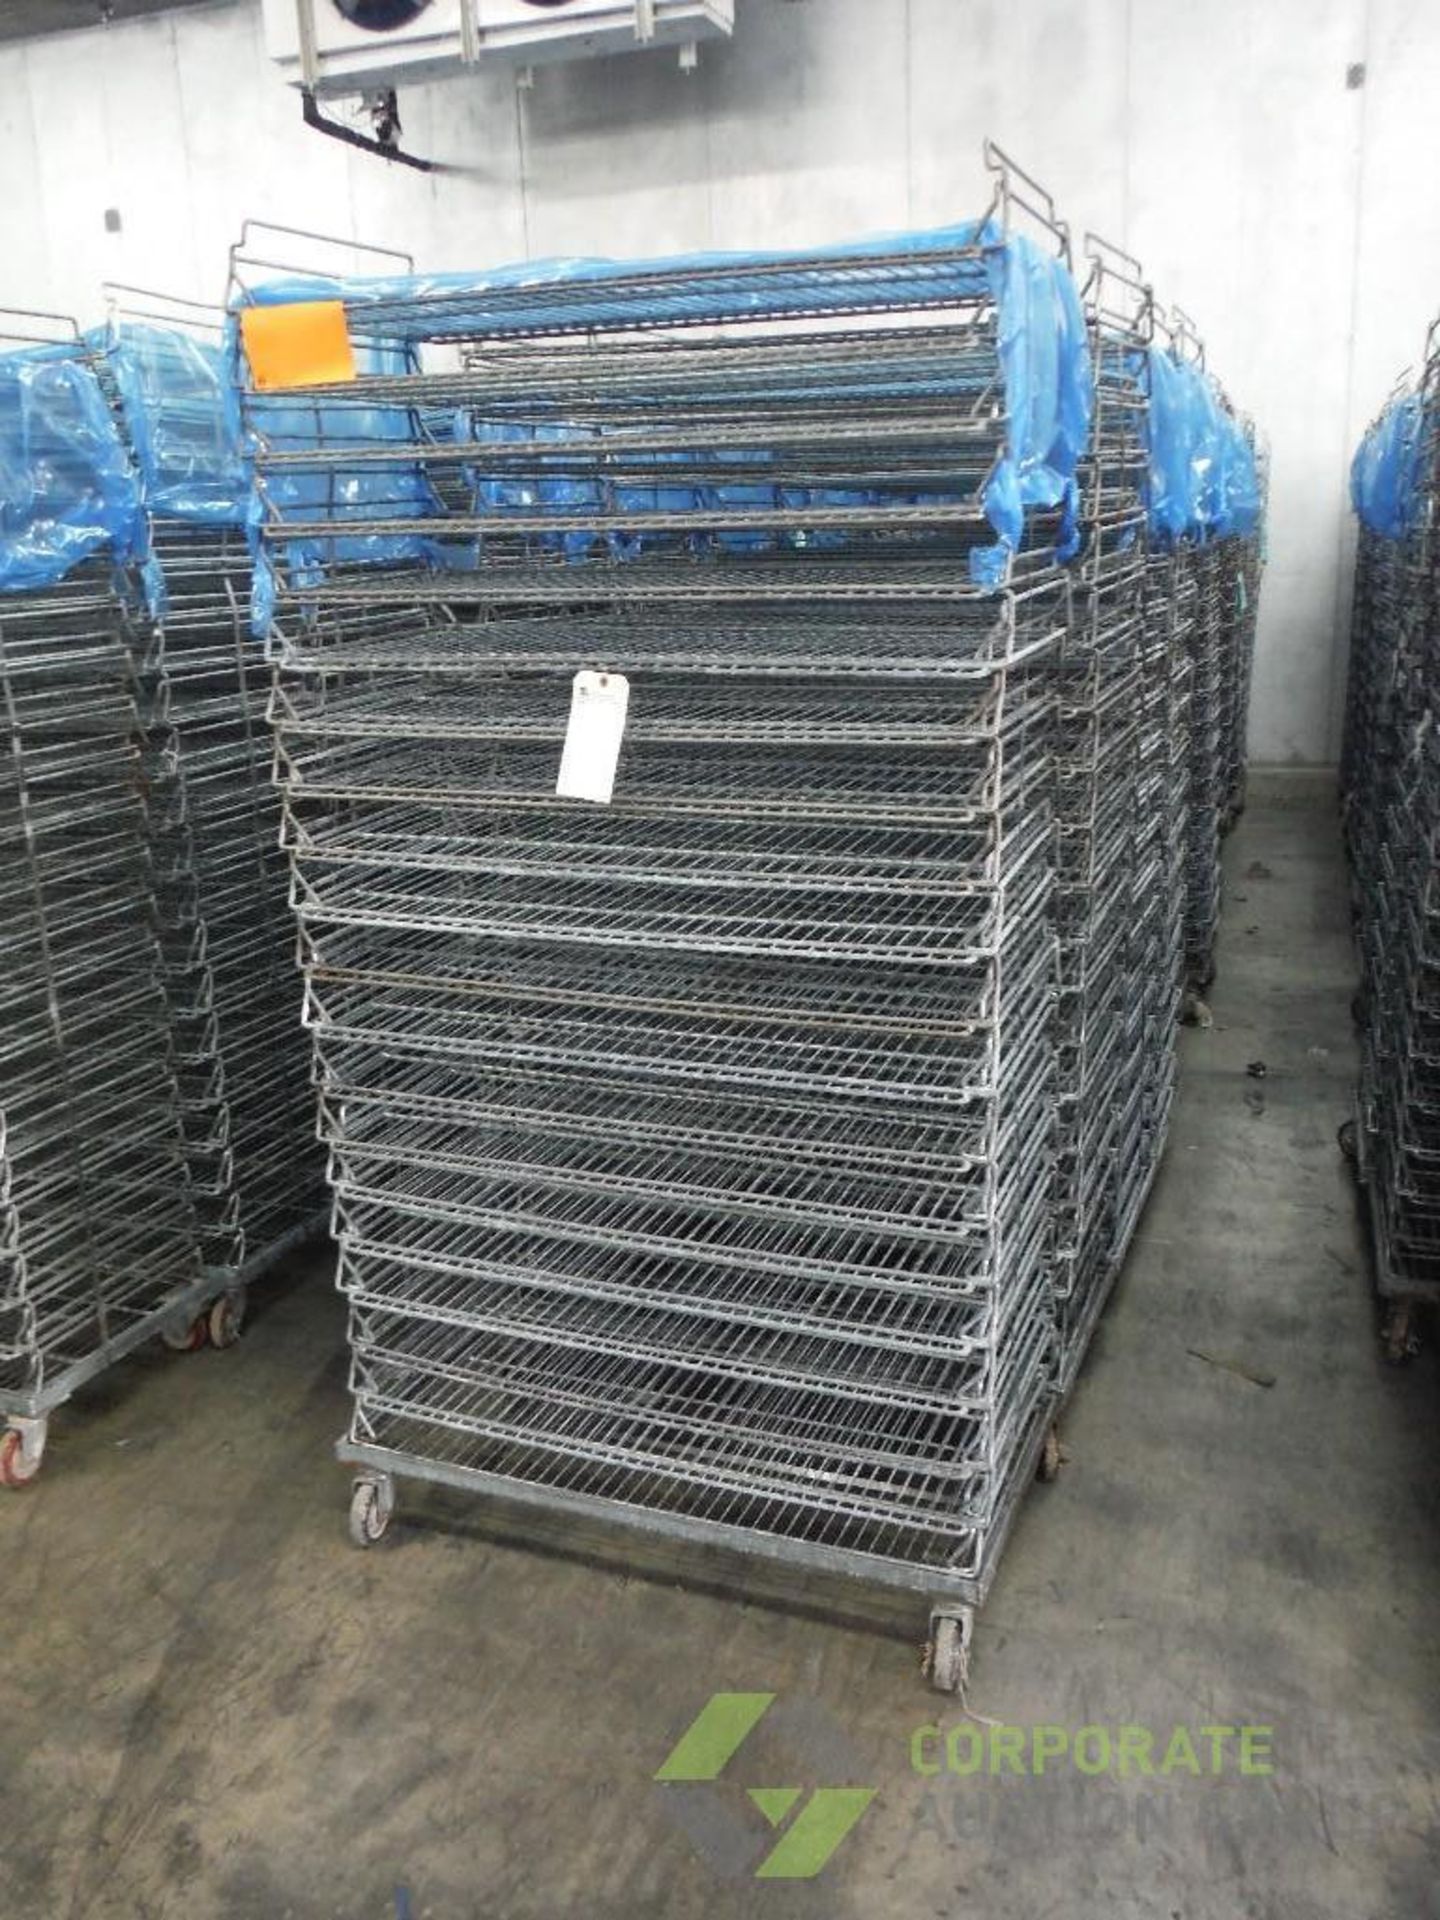 Mild steel stackable bakery racks, 39 in. long x 19 in. wide x 76 in. tall, 20 shelves, 2.75 in.